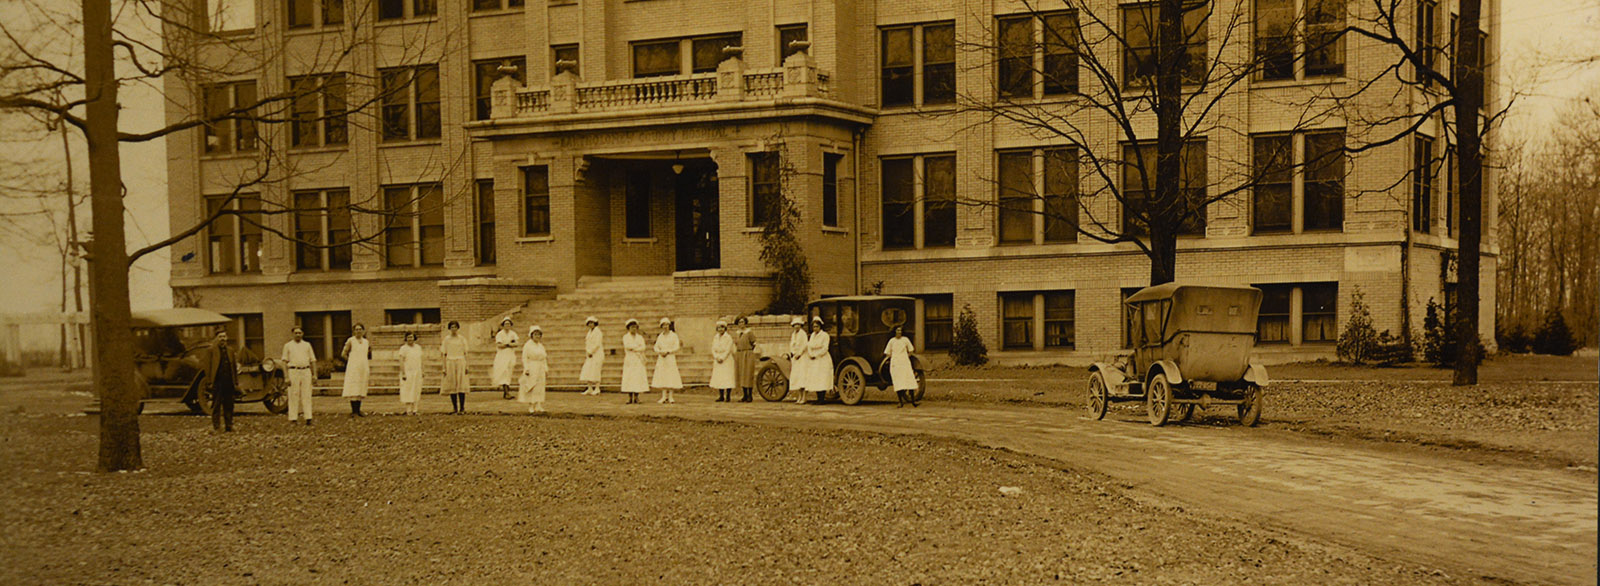 Historic photo of Bartholomew County Hospital